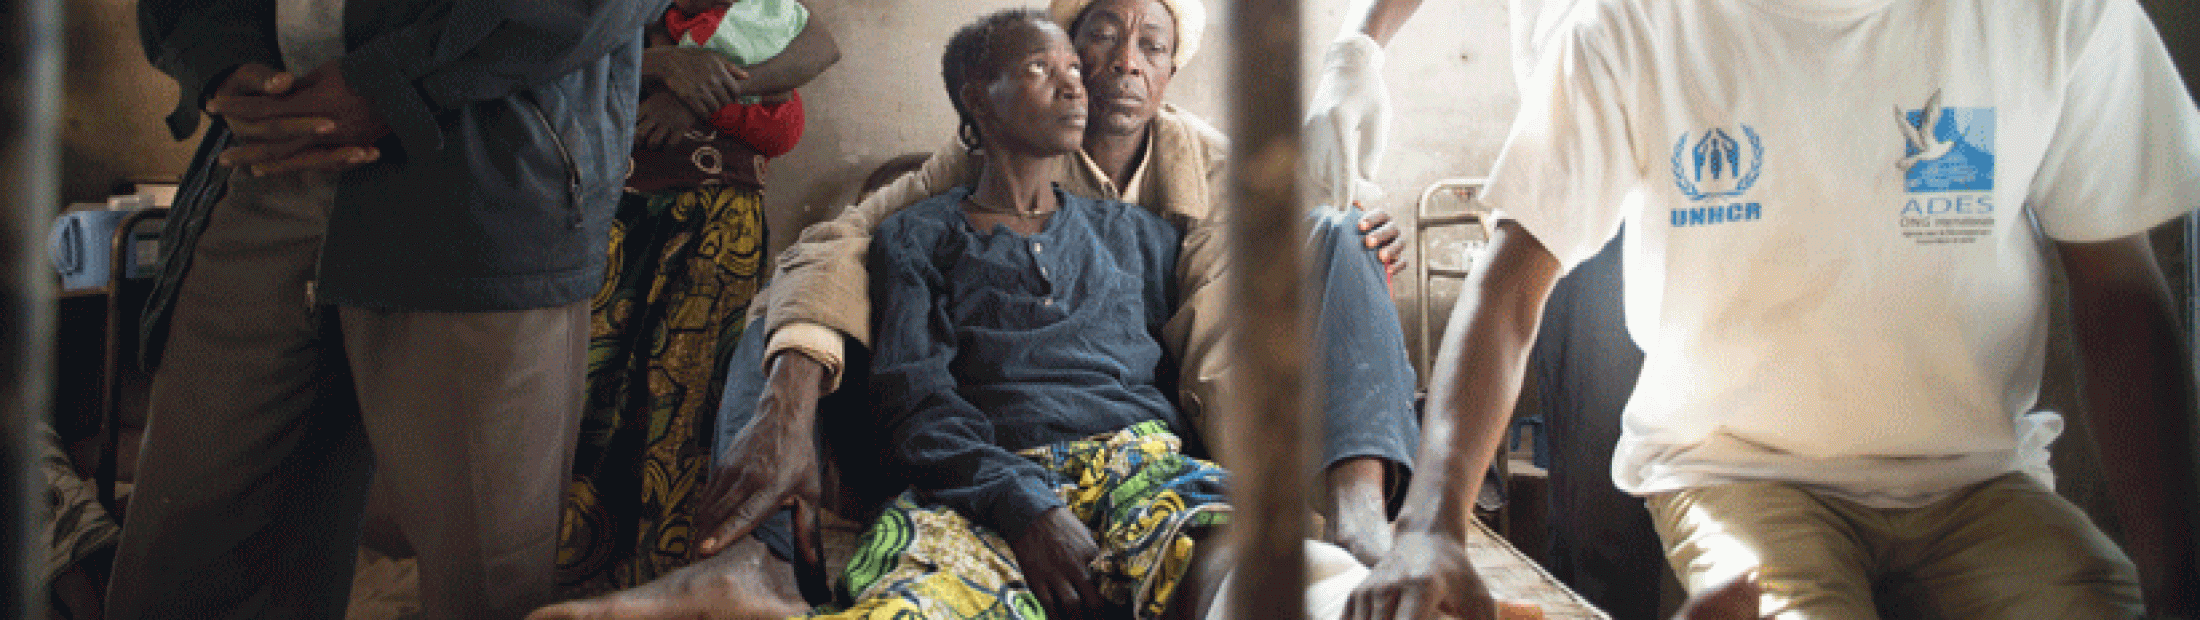 Tuberculosis: la persistencia de una vieja enfermedad